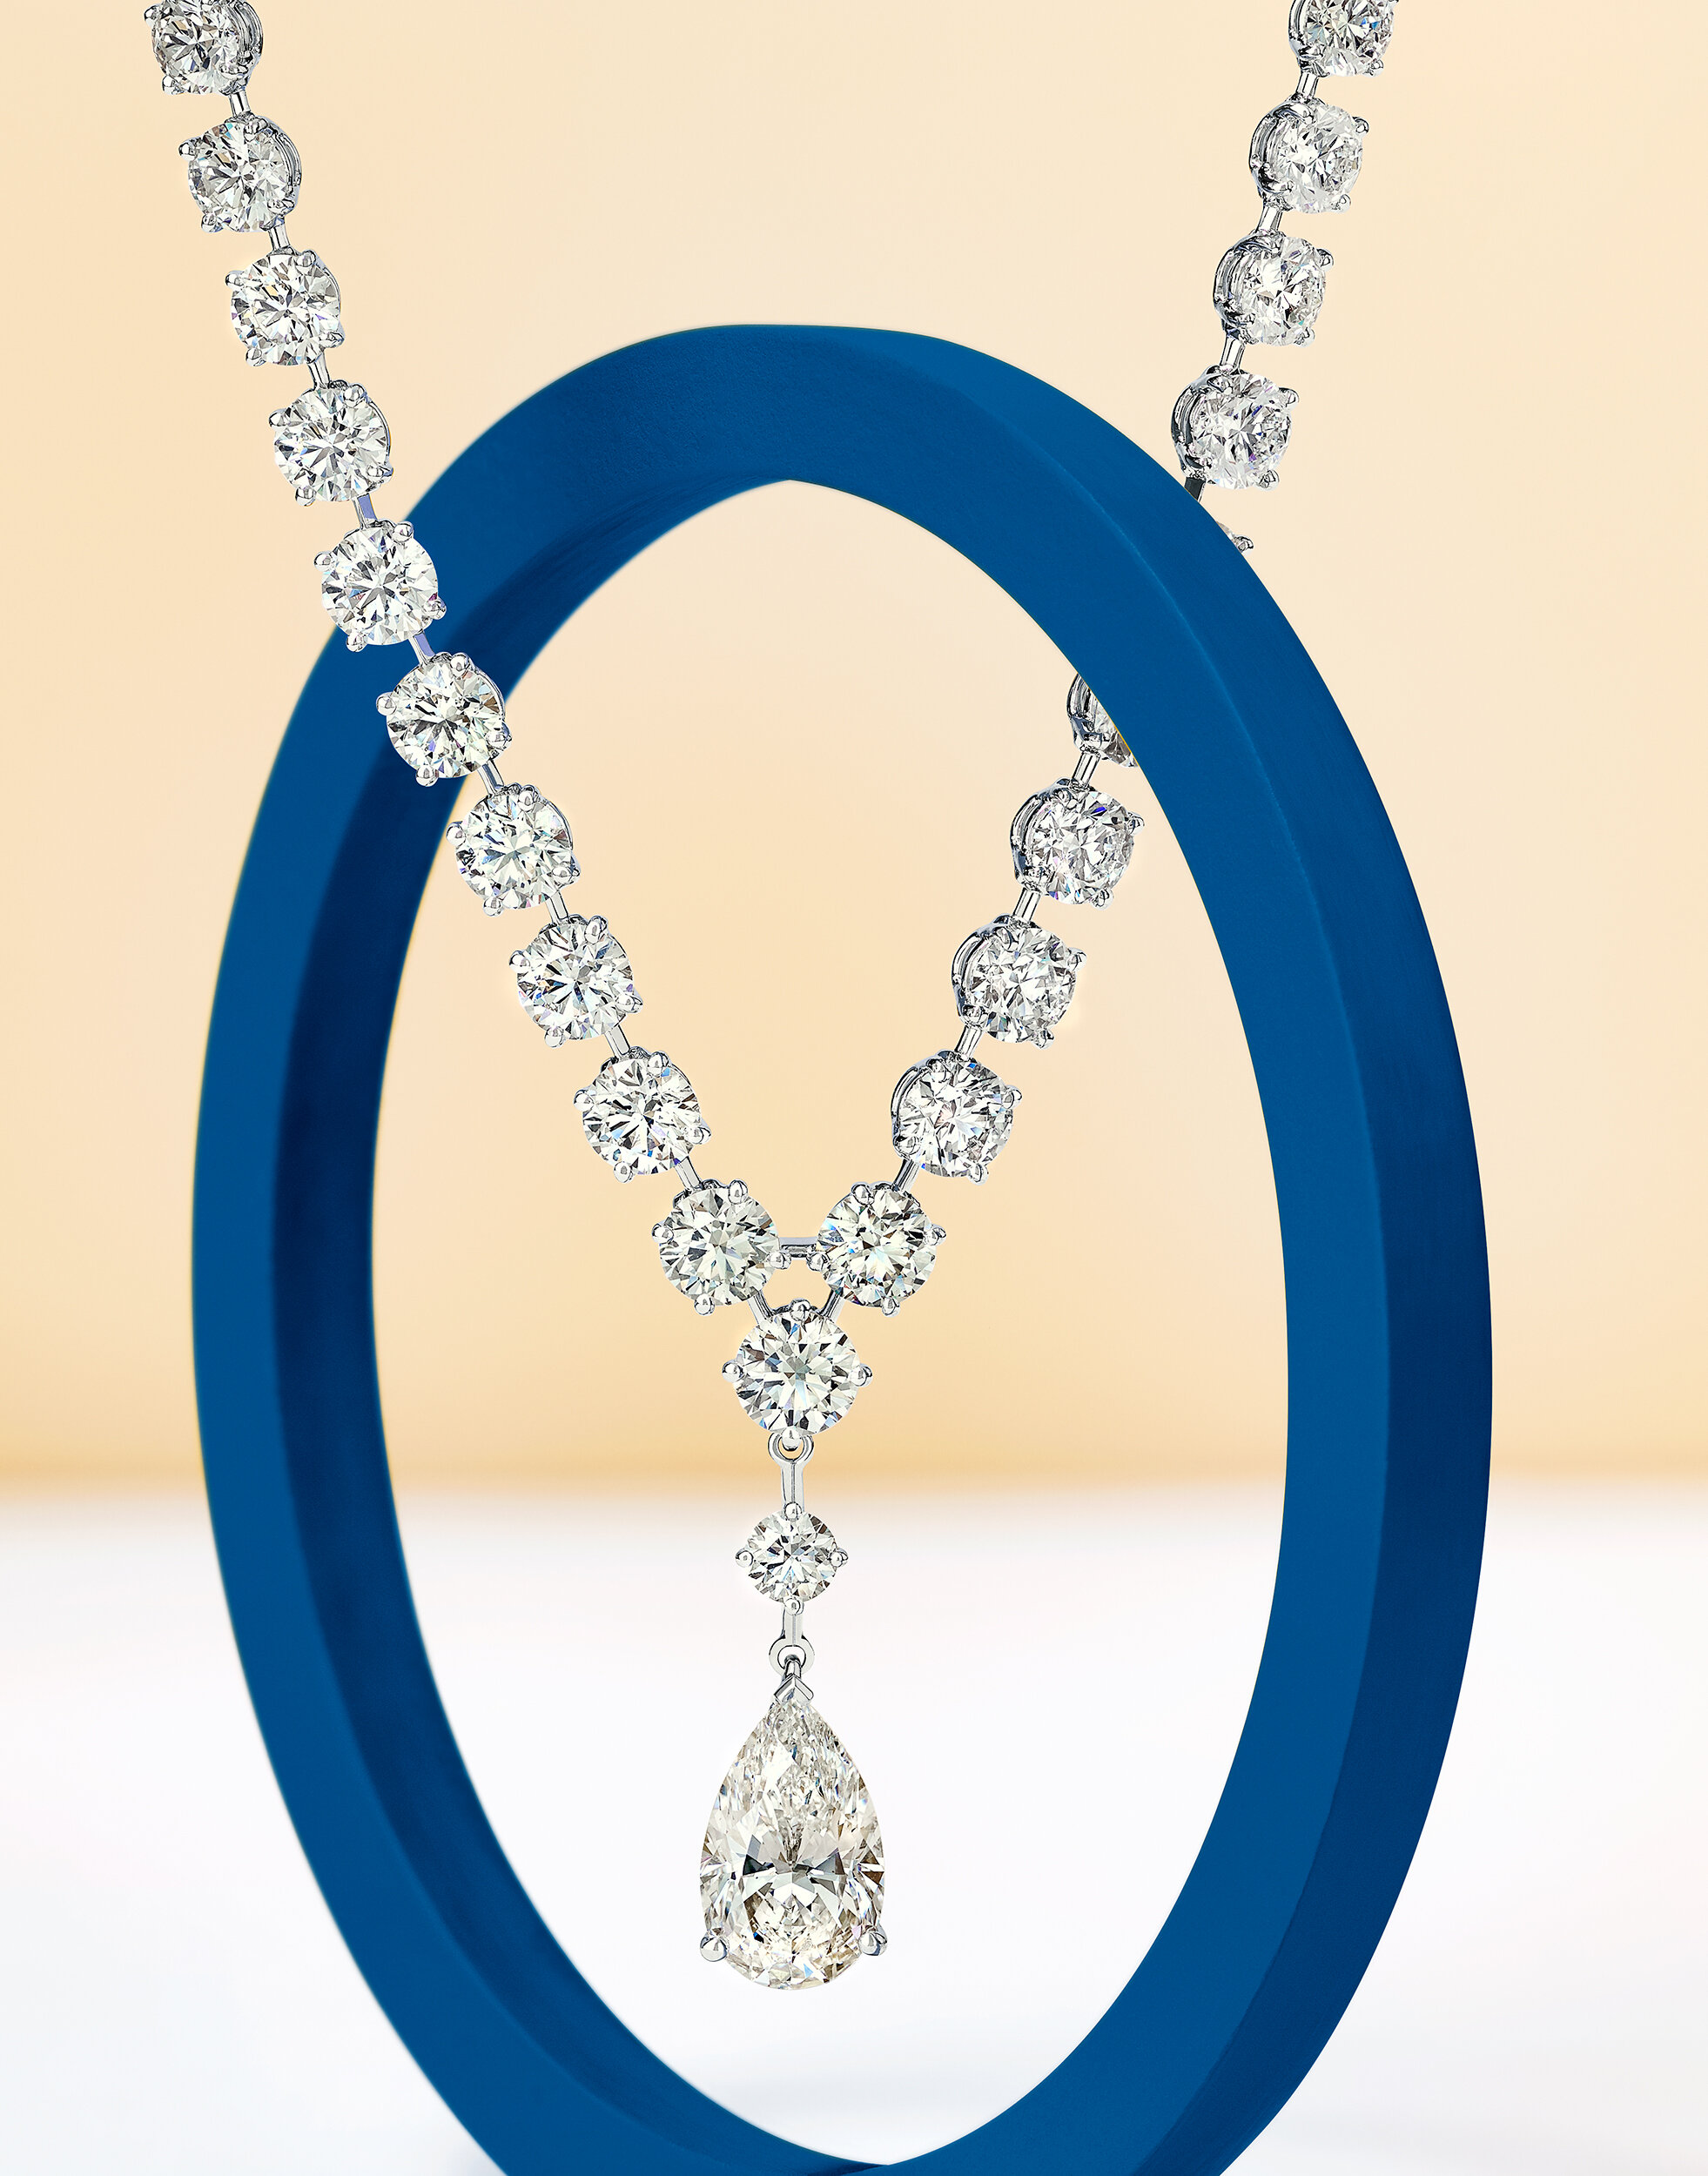  Diamond Necklace shot for De Beers 